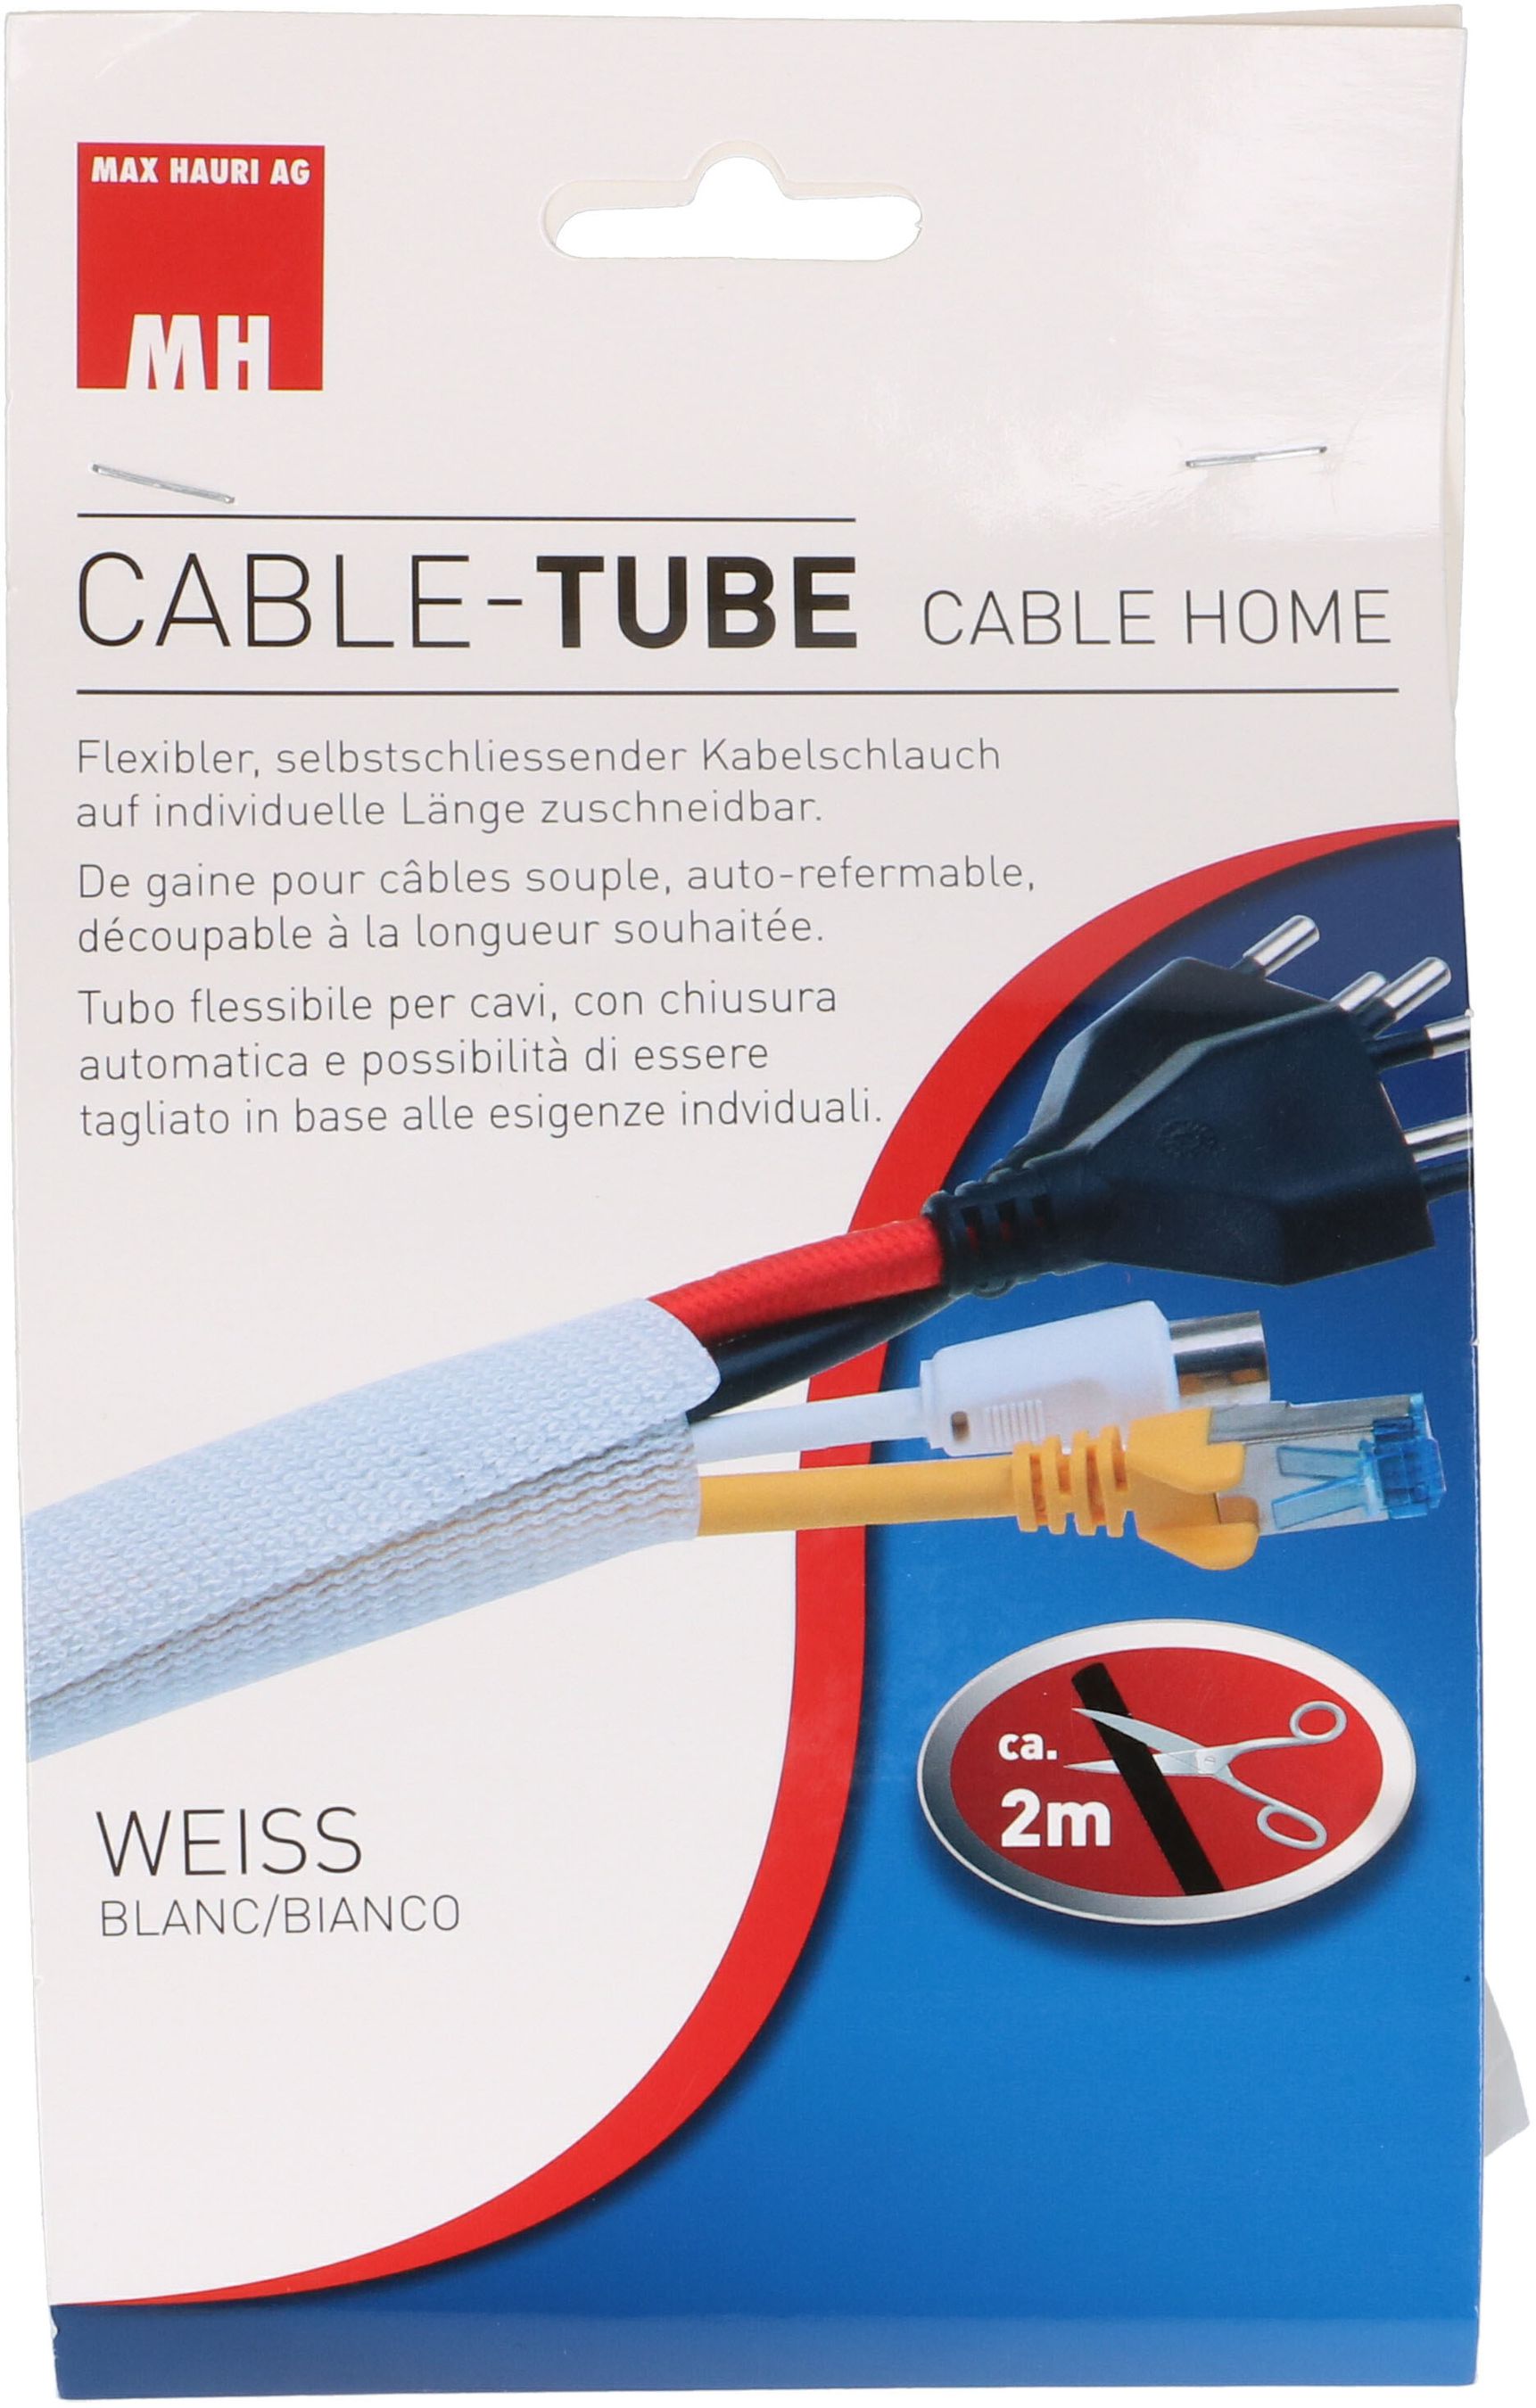 gaine pour câbles souple auto-refermable 2m blanc - MAX HAURI AG